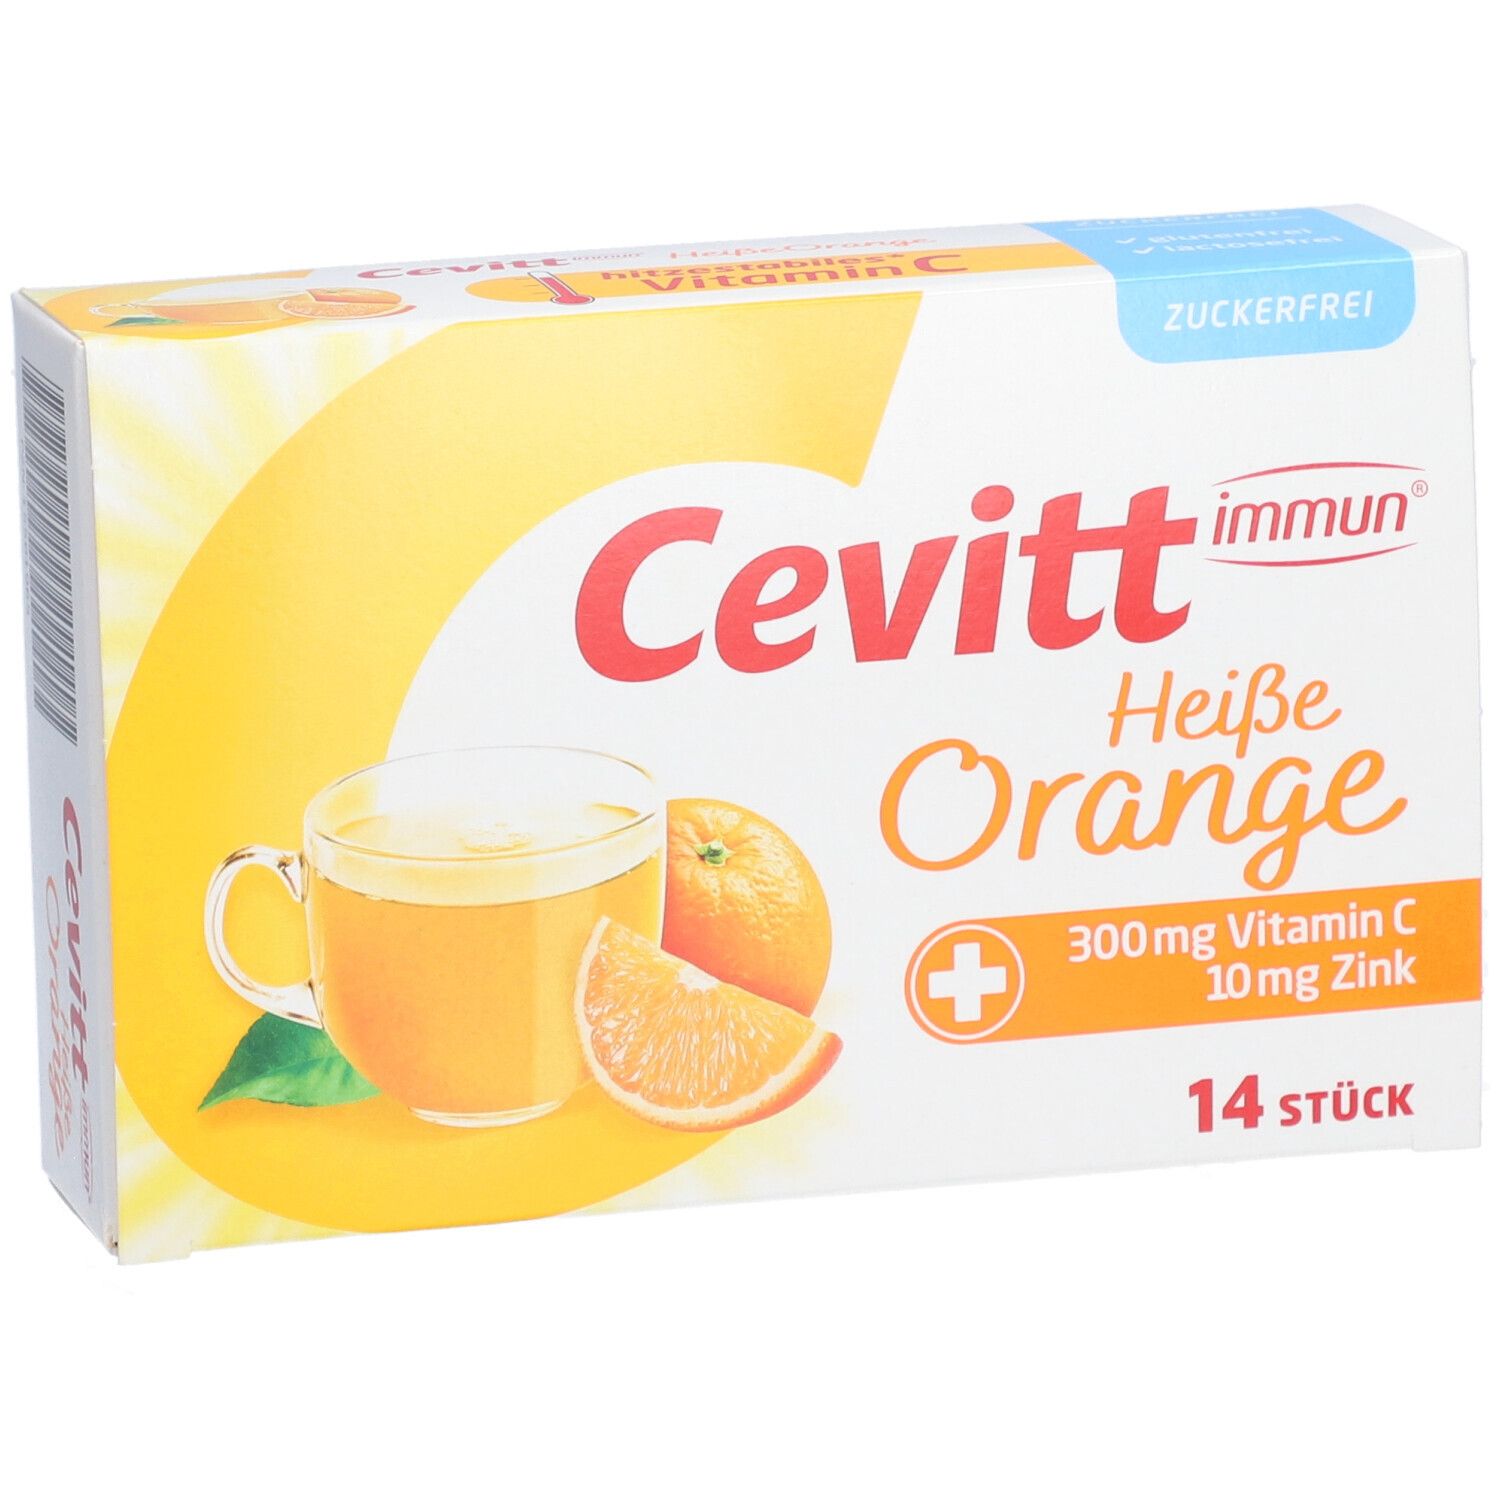 Cevitt immun ® heiße Orange zuckerfrei